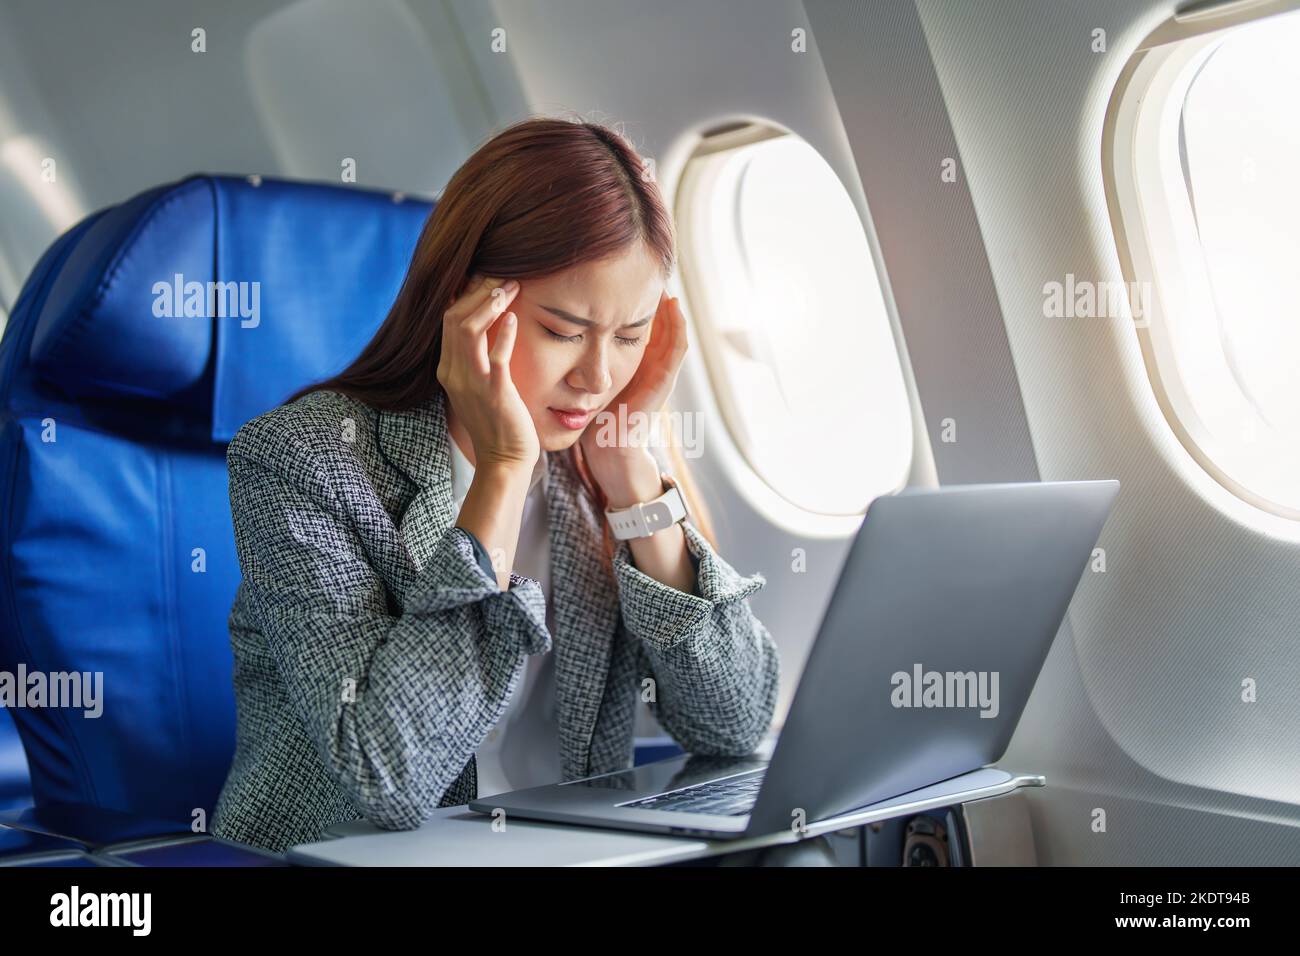 Le portrait d'une femme d'affaires ou d'un entrepreneur asiatique réussi en costume formel sur un avion assis en classe affaires montre un réfléchi et stressé Banque D'Images